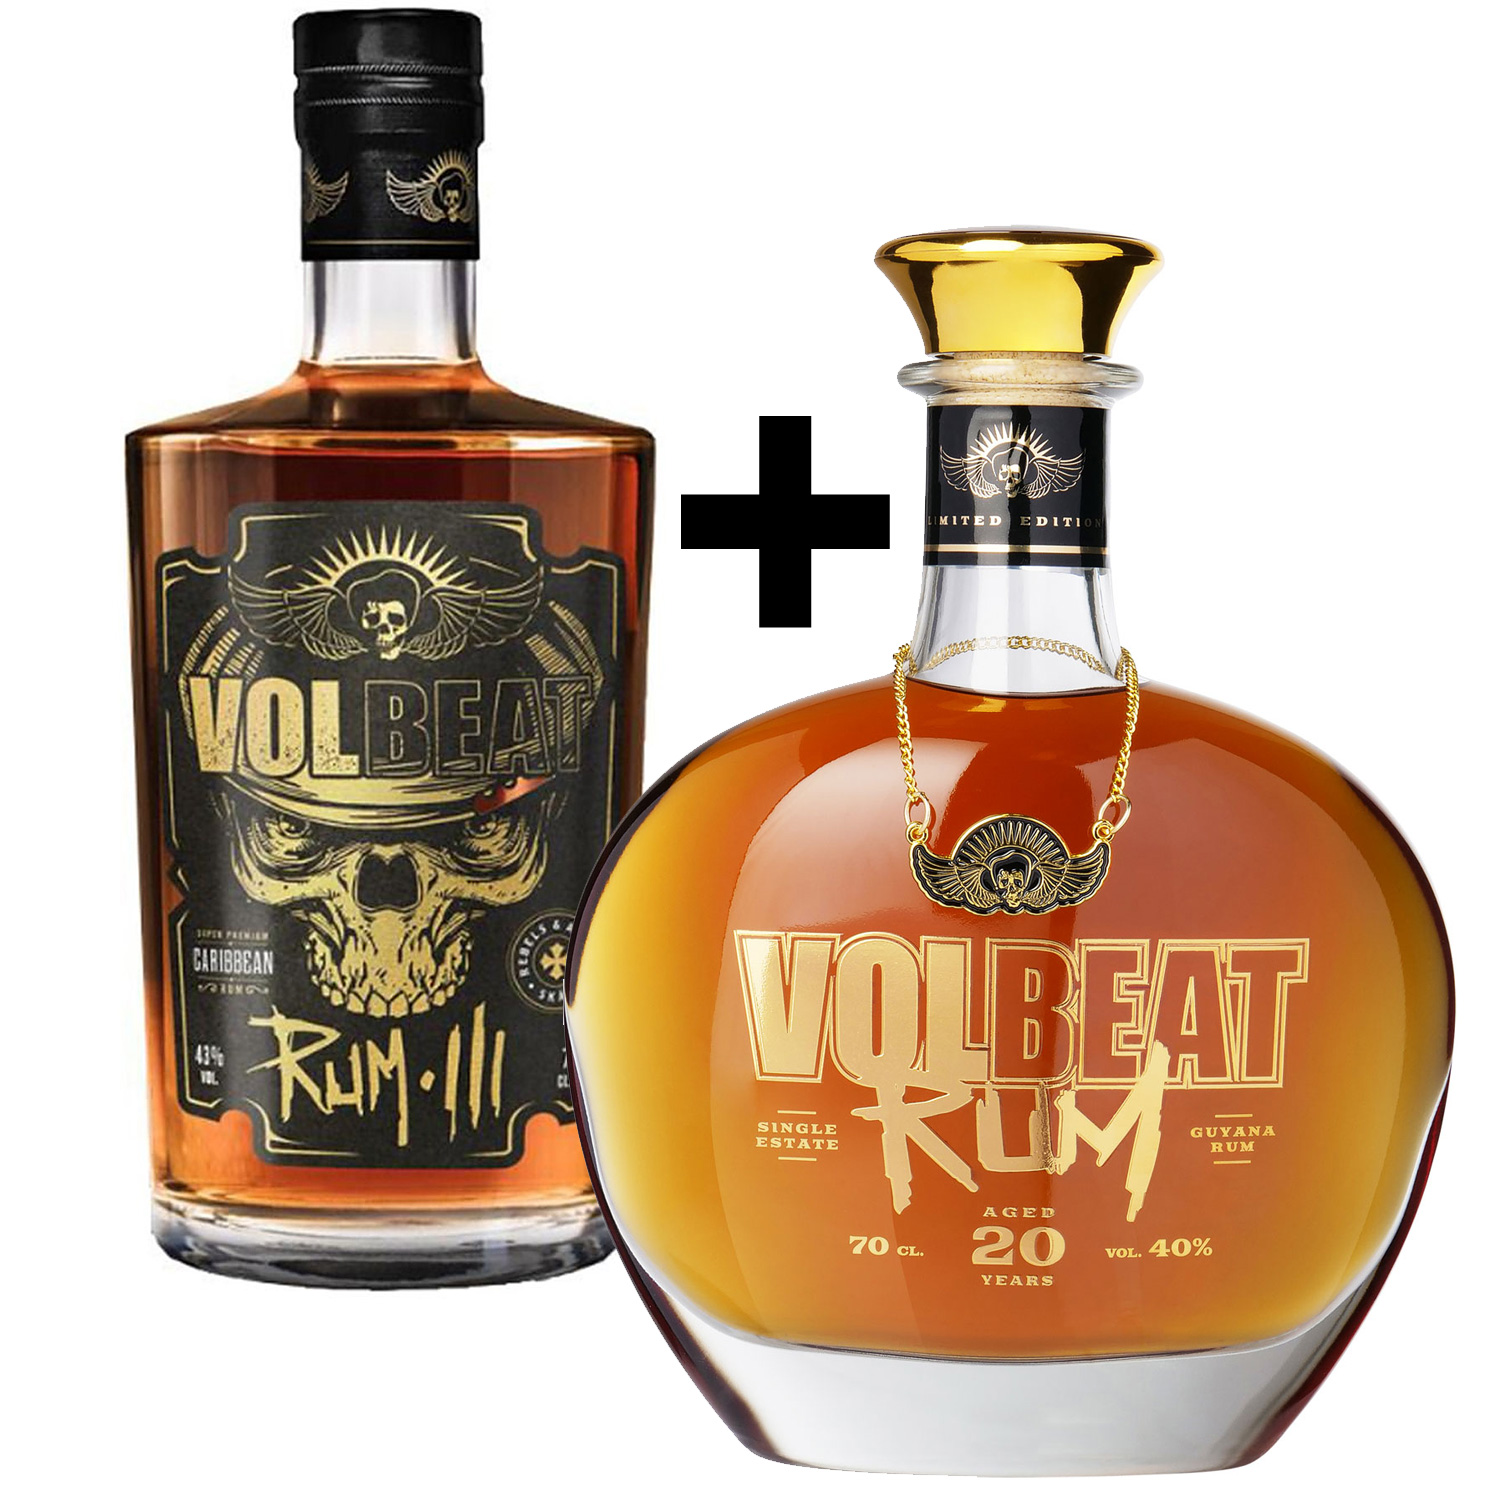 Volbeat Rum Paket